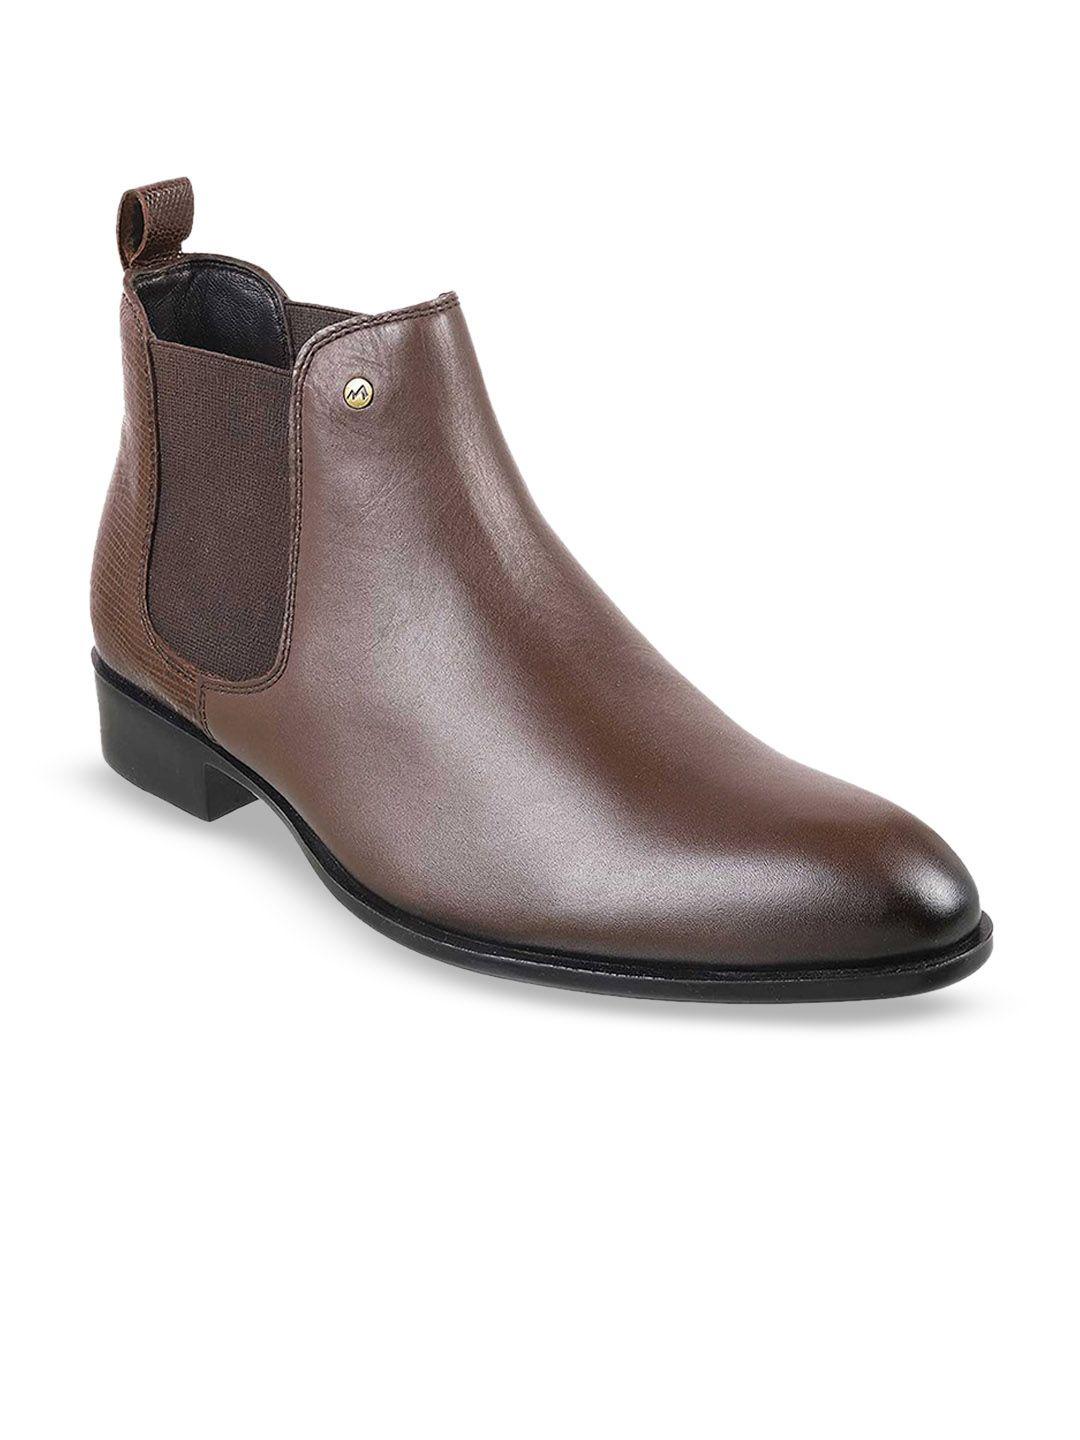 metro-men-mid-top-block-heel-leather-chelsea-boots